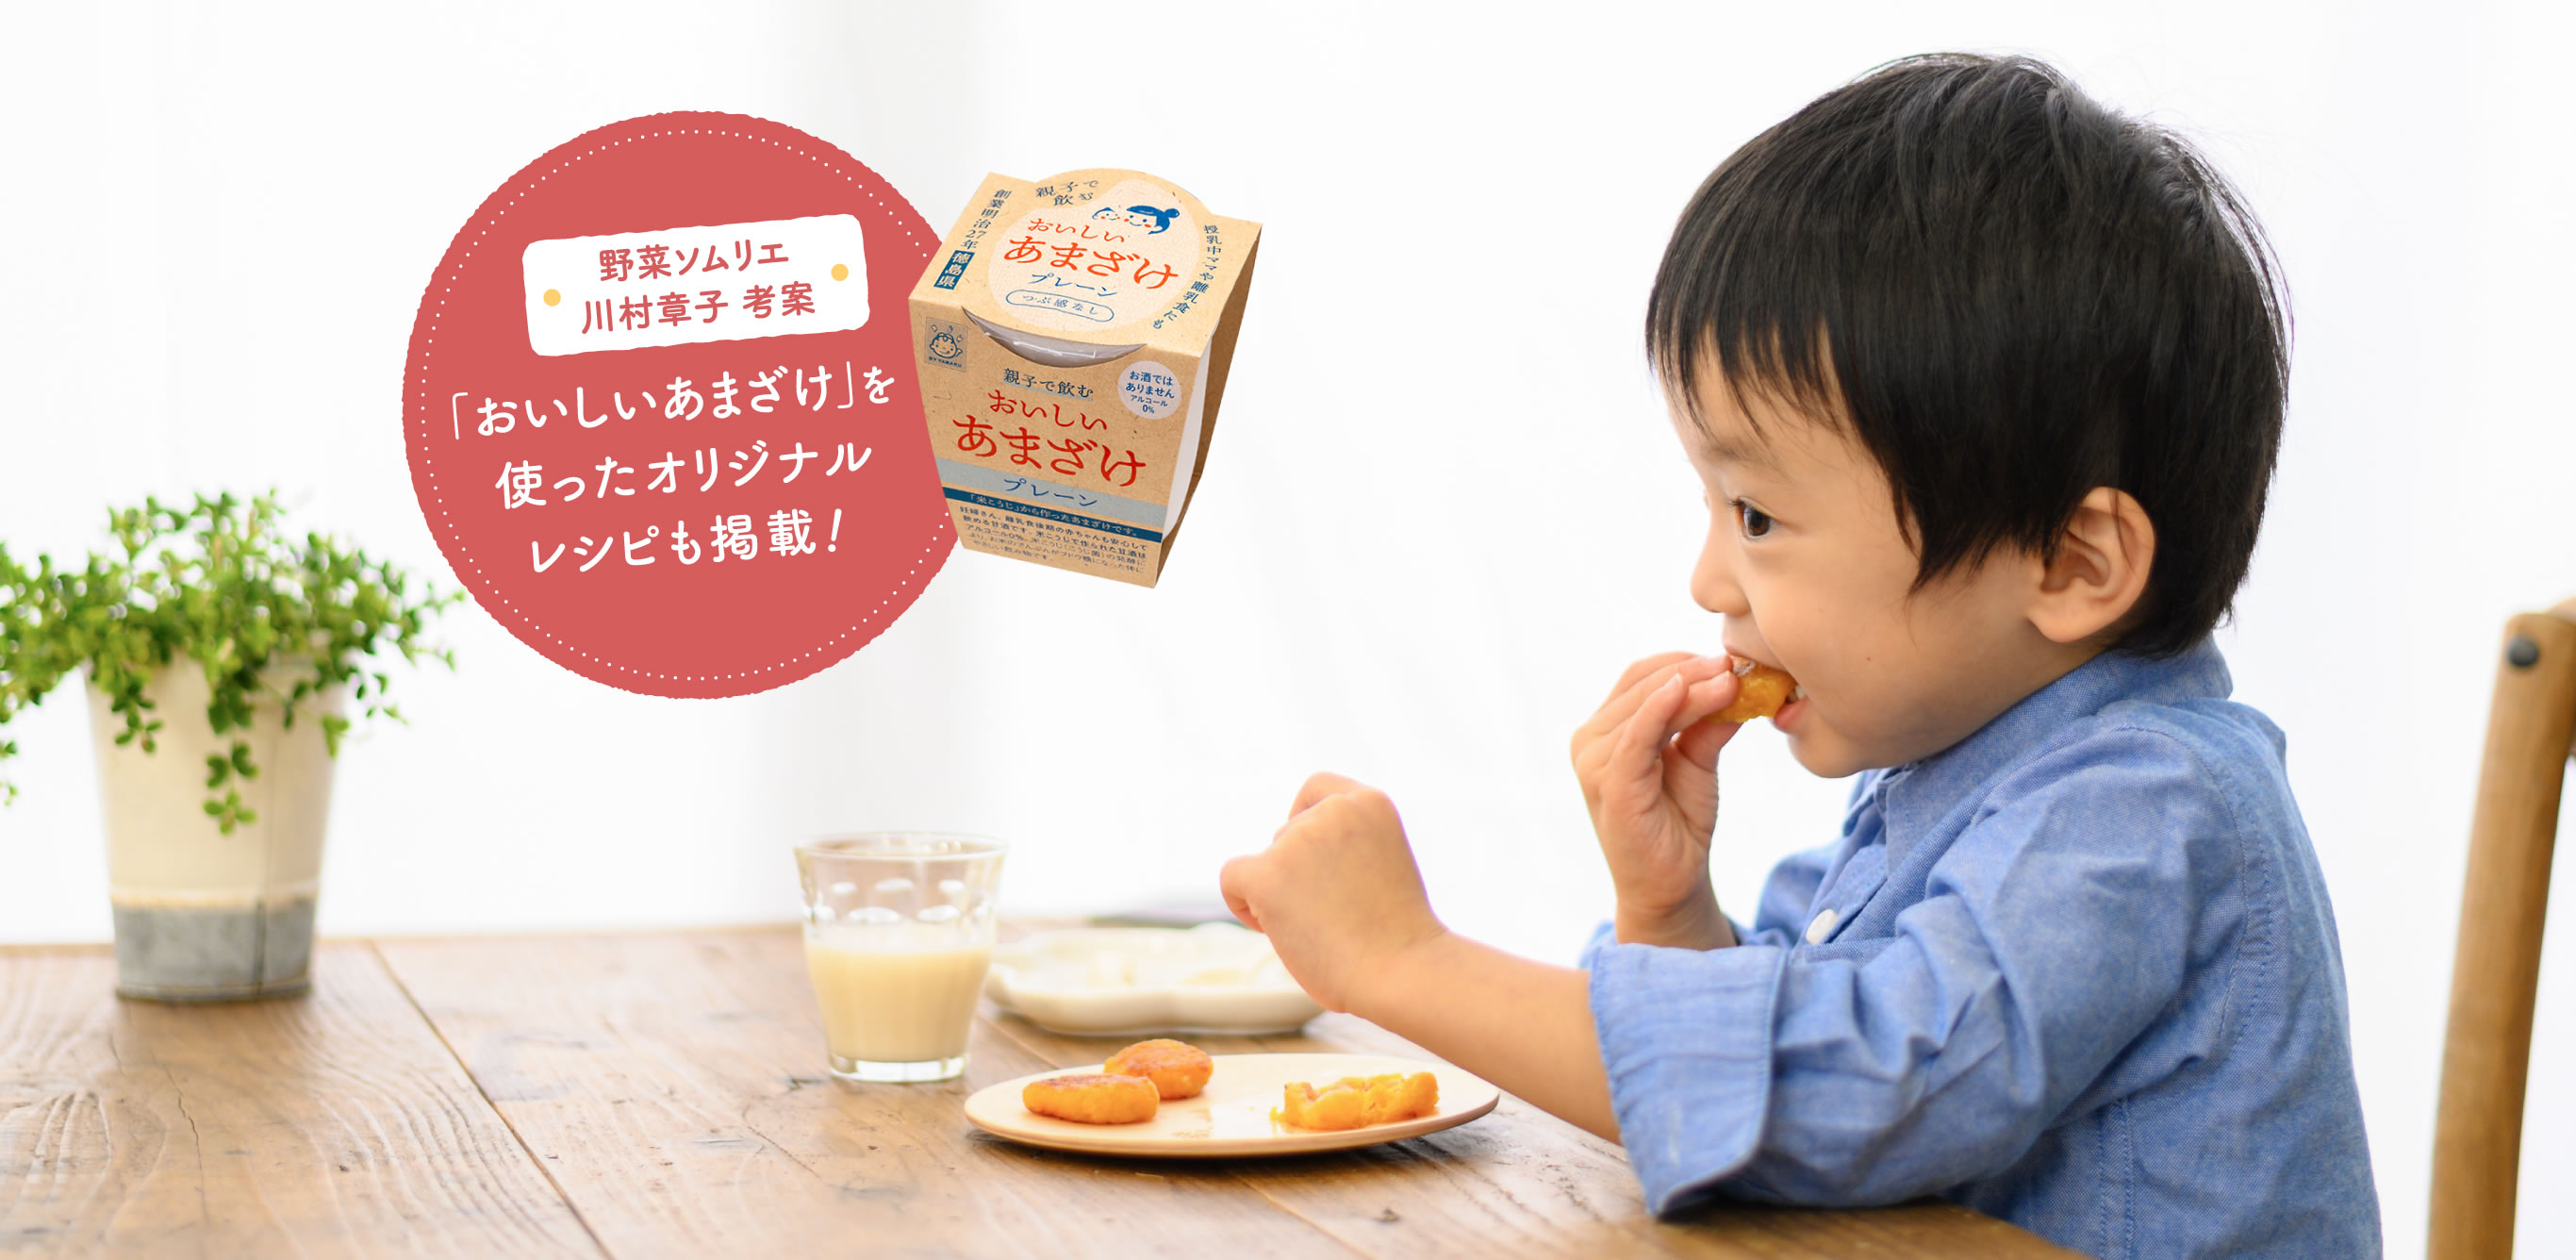 野菜ソムリエ川村章子考案「おいしいあざまけ」を使ったオリジナルレシピも掲載！